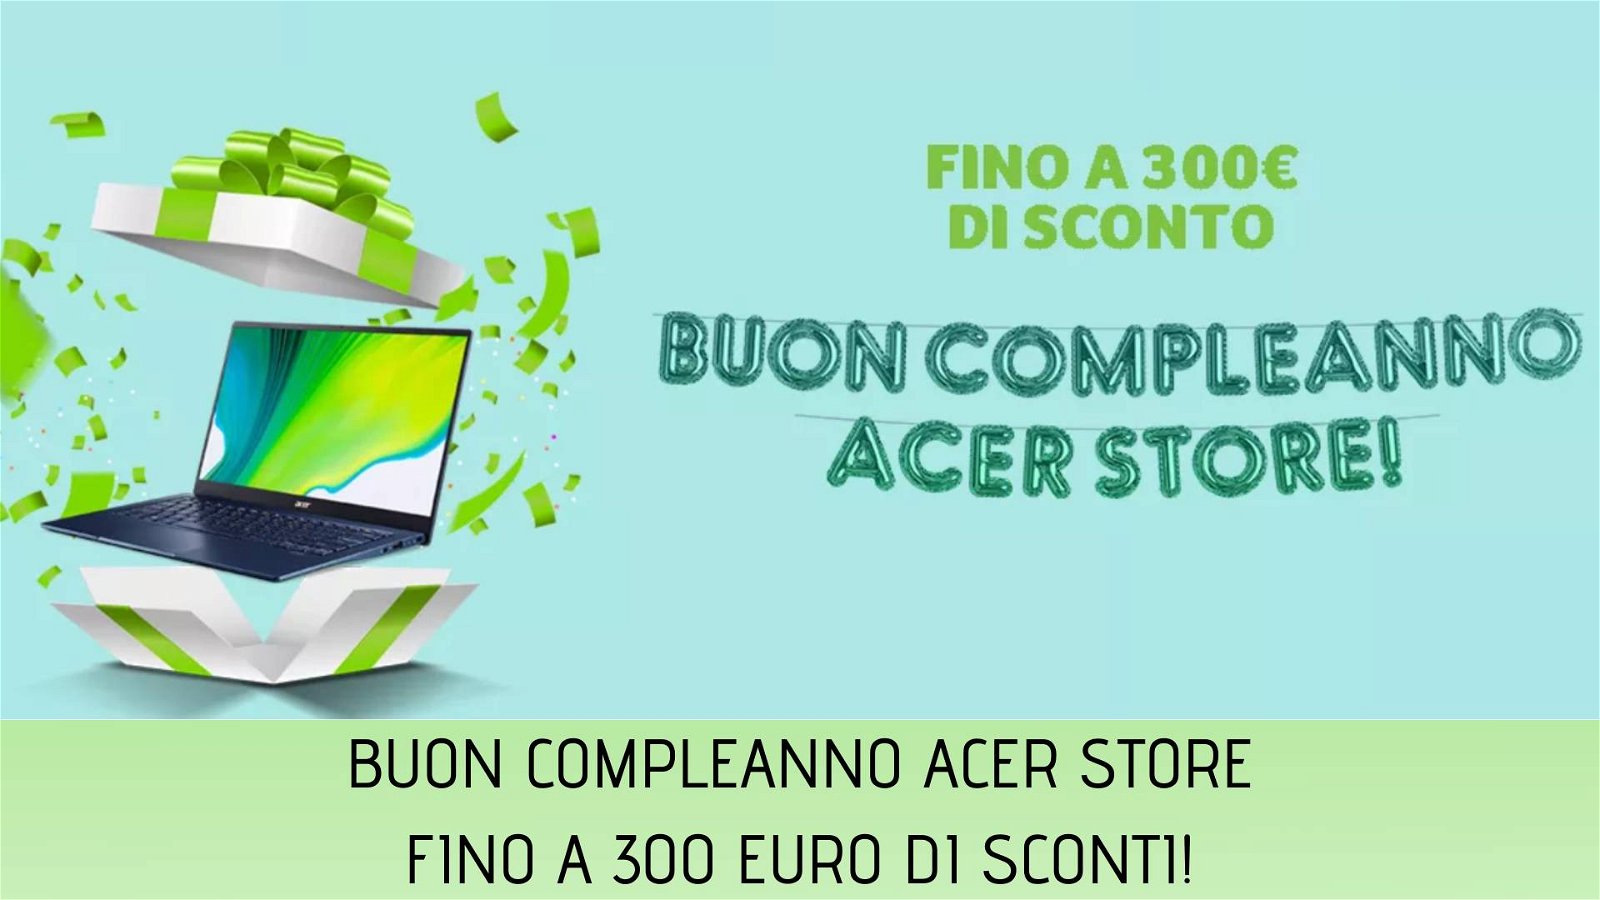 Immagine di Offerte di Compleanno da Acer Store: sconti fino a 300€!